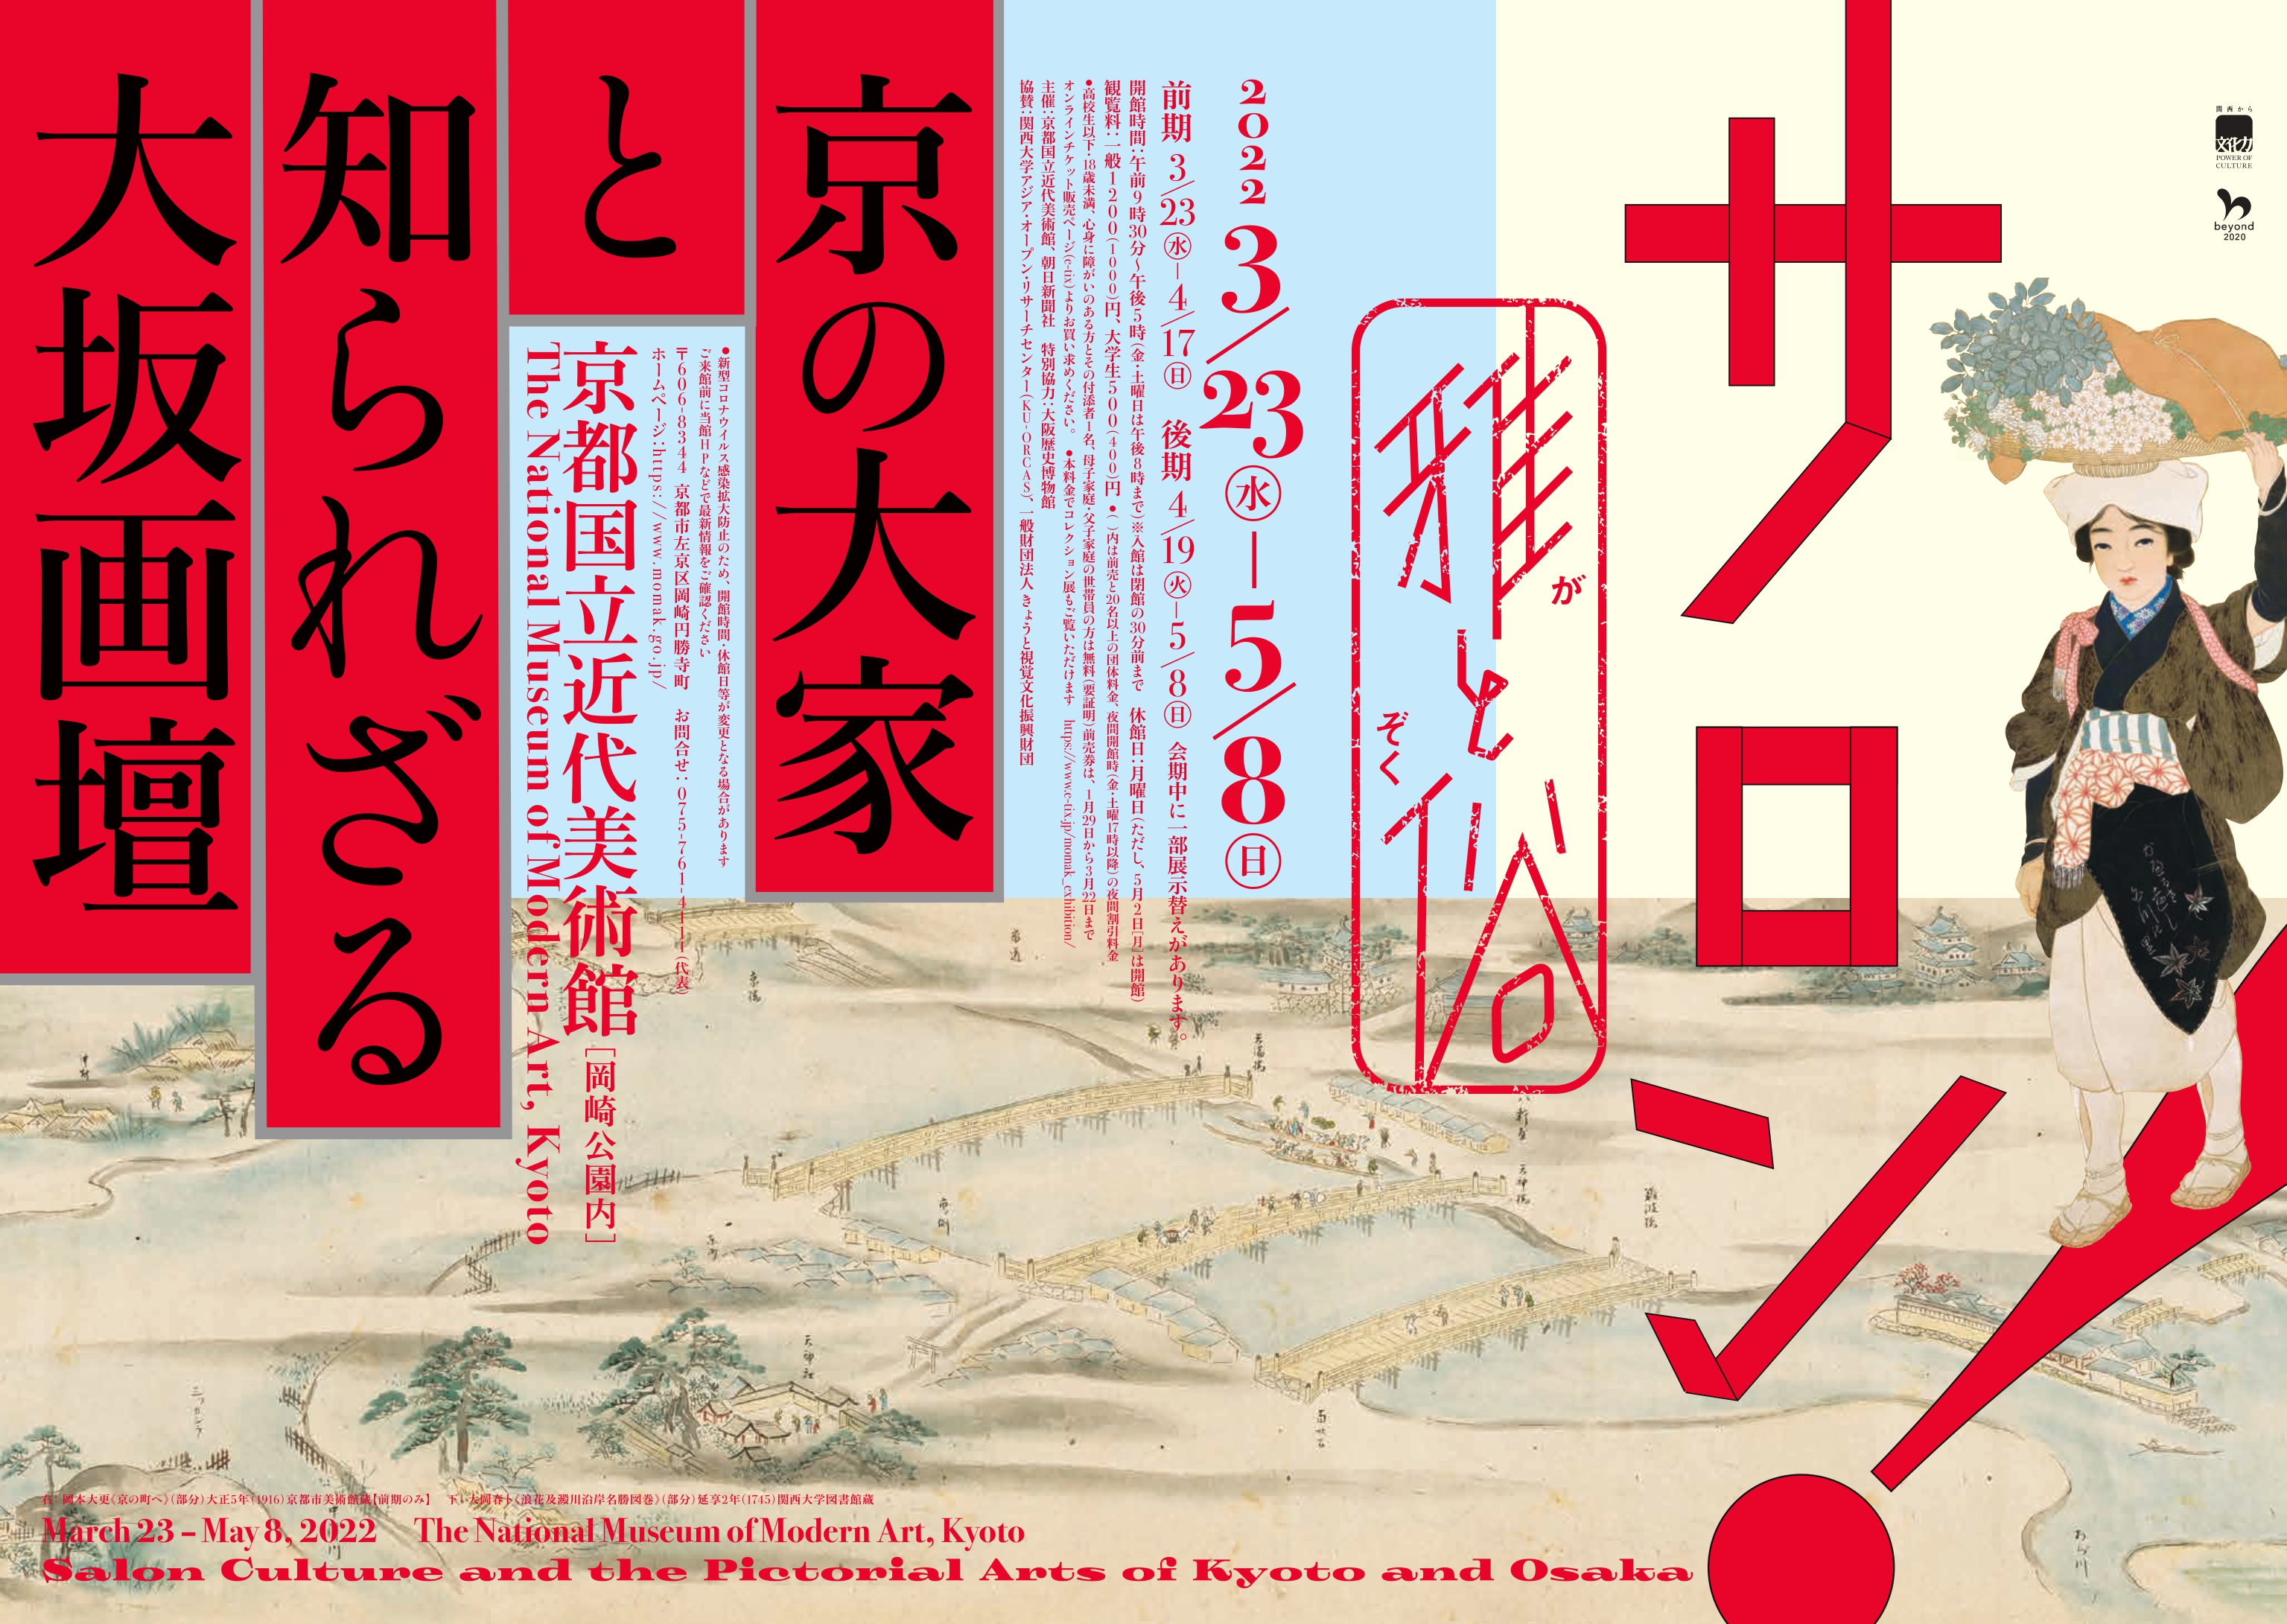 【絶版】図録「現代彫刻の異才 辻晋堂」京都国立近代美術館 1983年